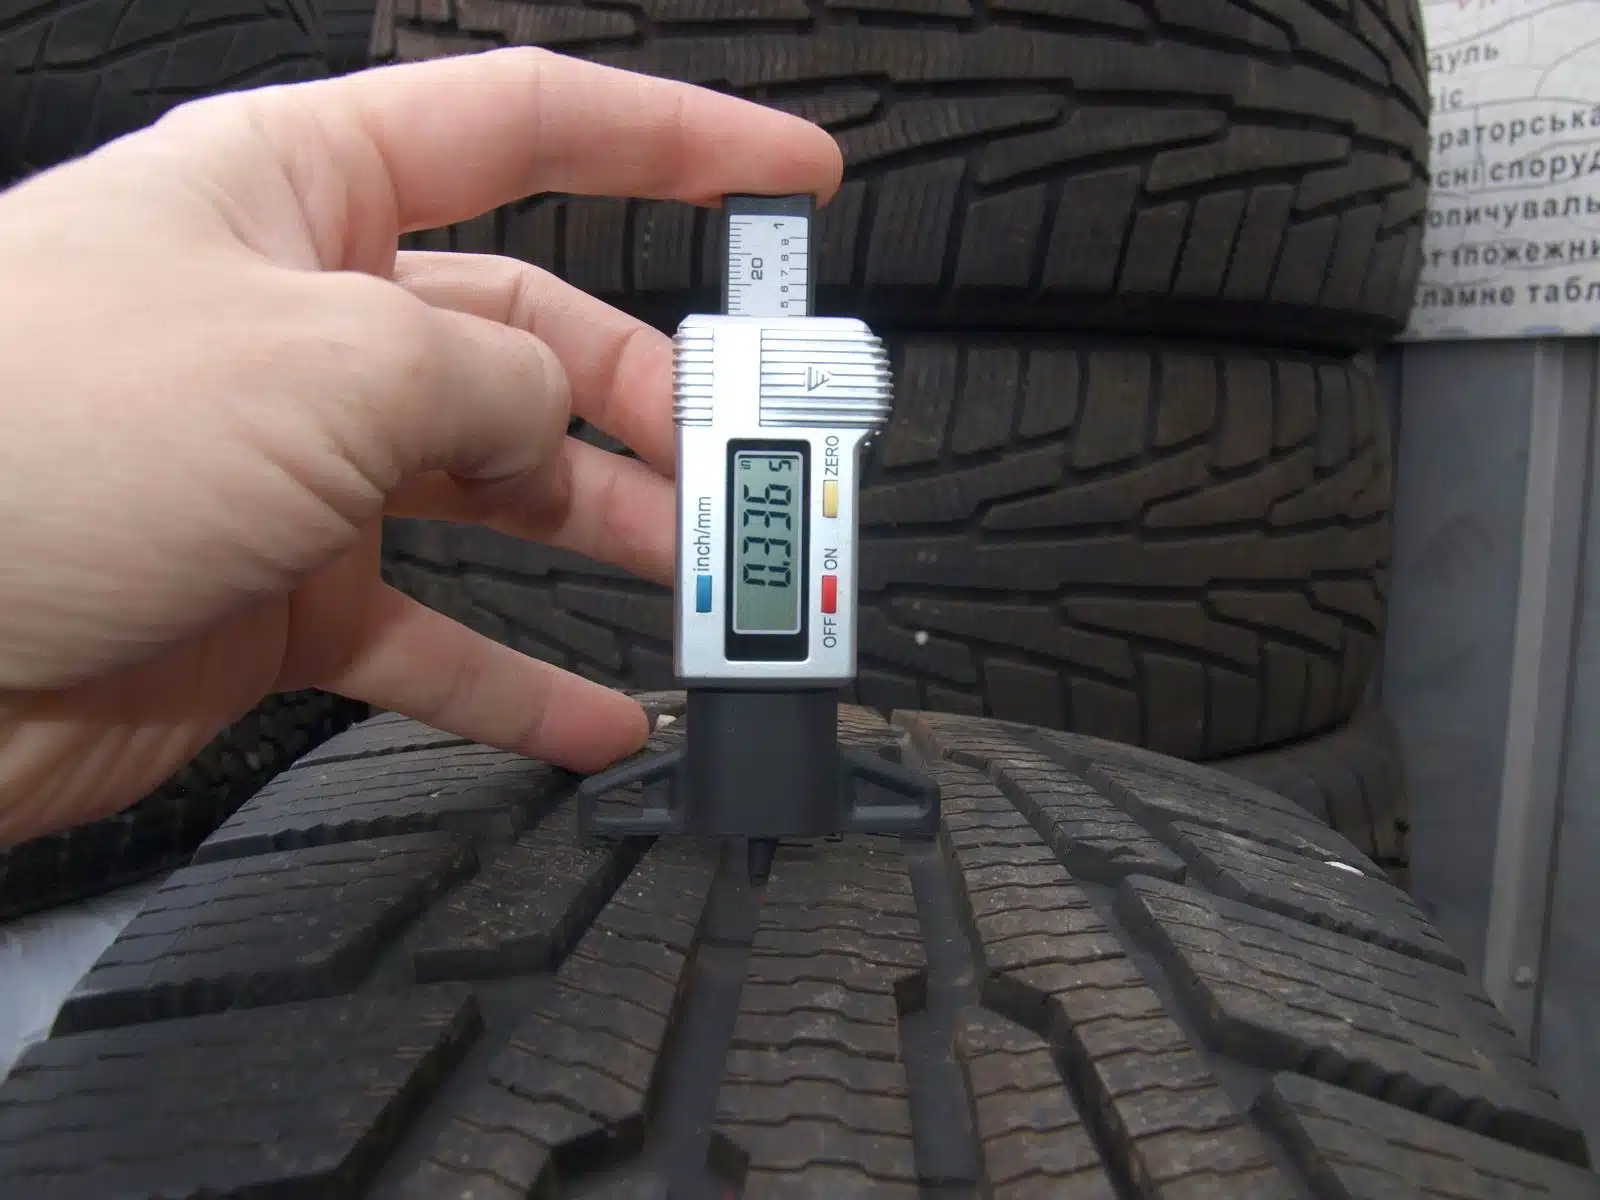 Checking tire Depositphotos 106531002 XL